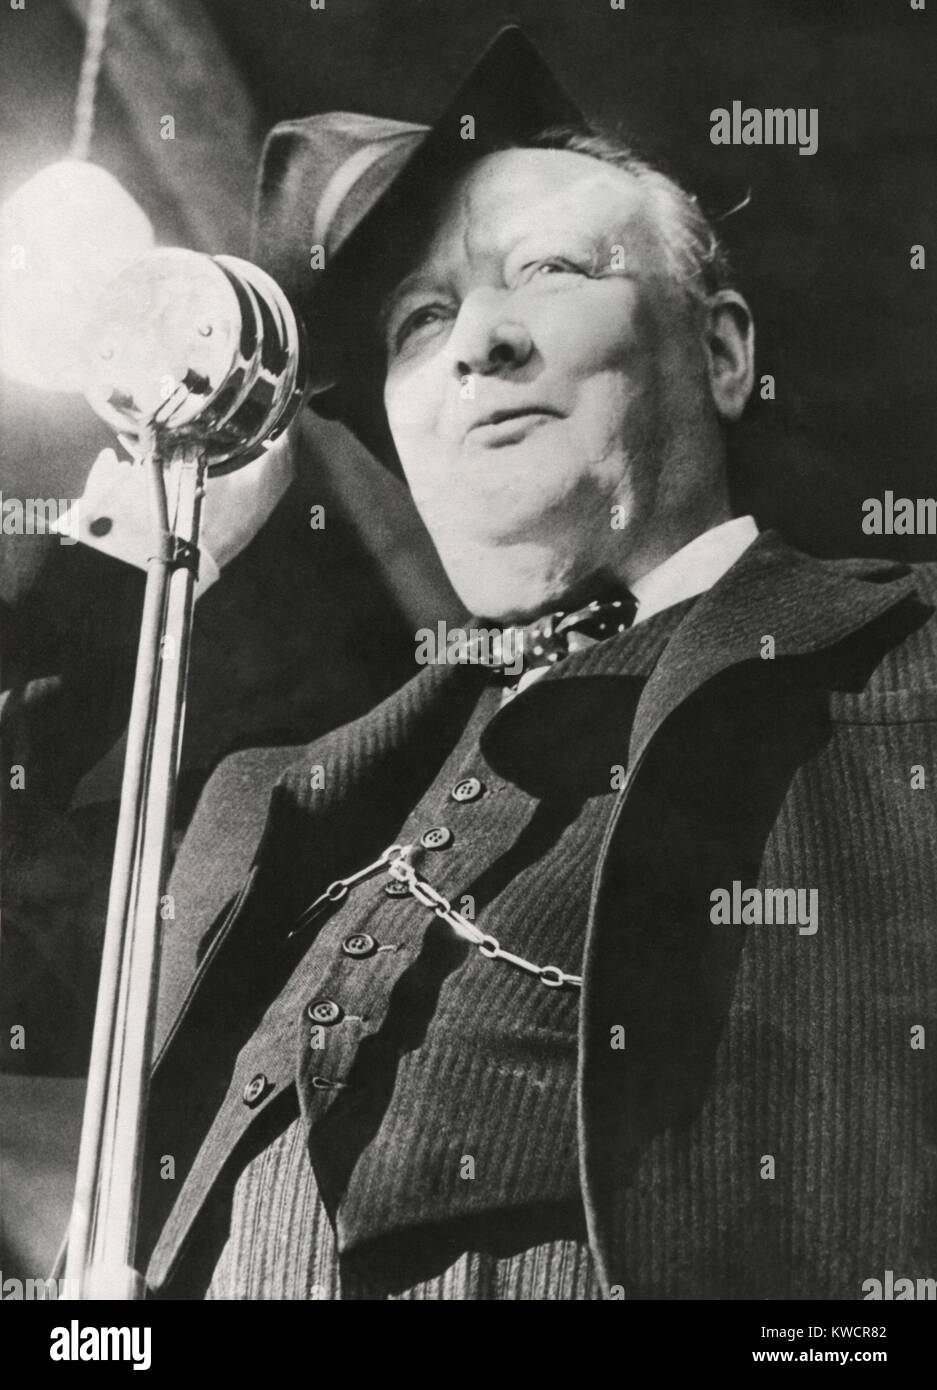 Der ehemalige Premier Winston Churchill Rundfunk einen Funkspruch bei den britischen Parlamentswahlen. 16. August 1947. -(BSLOC 2014 17 49) Stockfoto